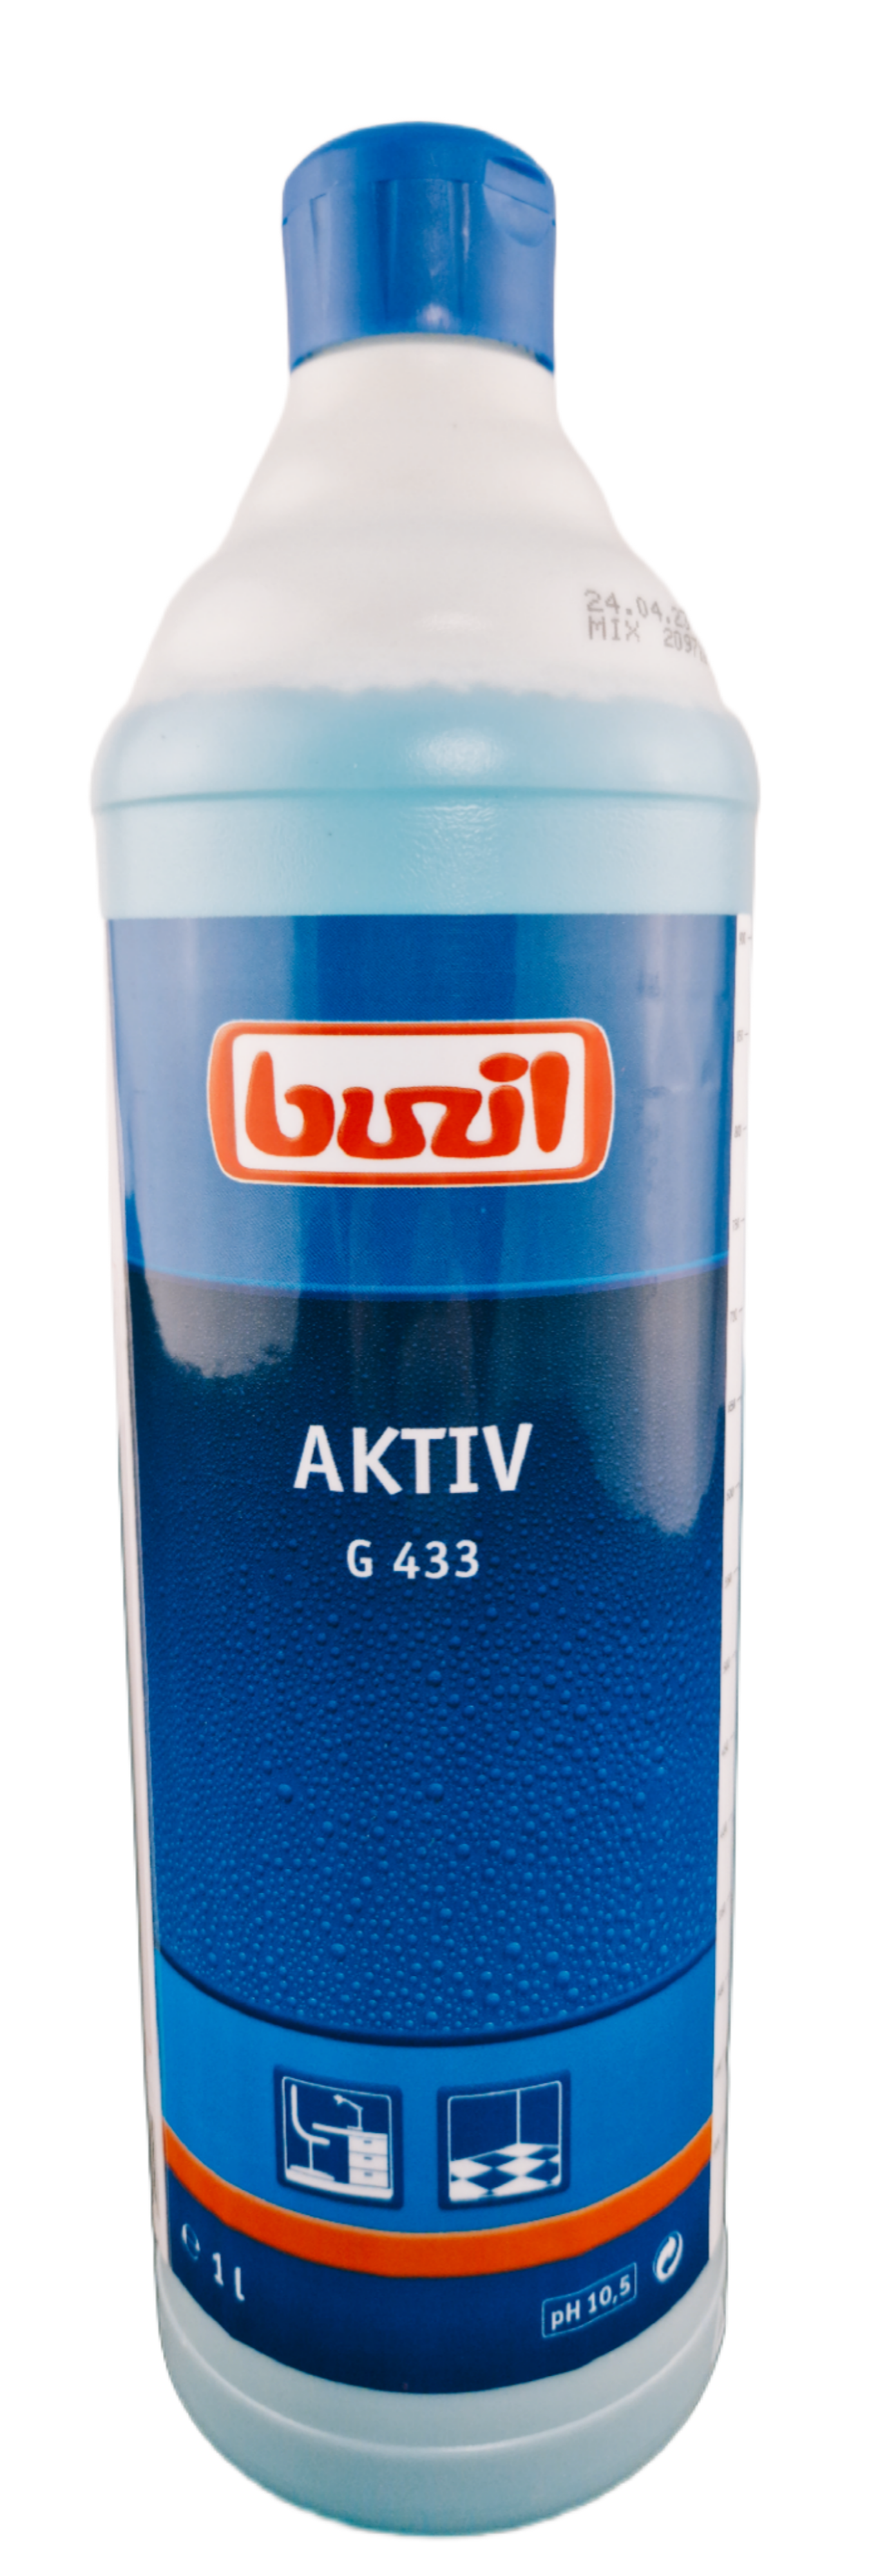 Buzil - Aktiv G433 Intensivreiniger 1 Liter